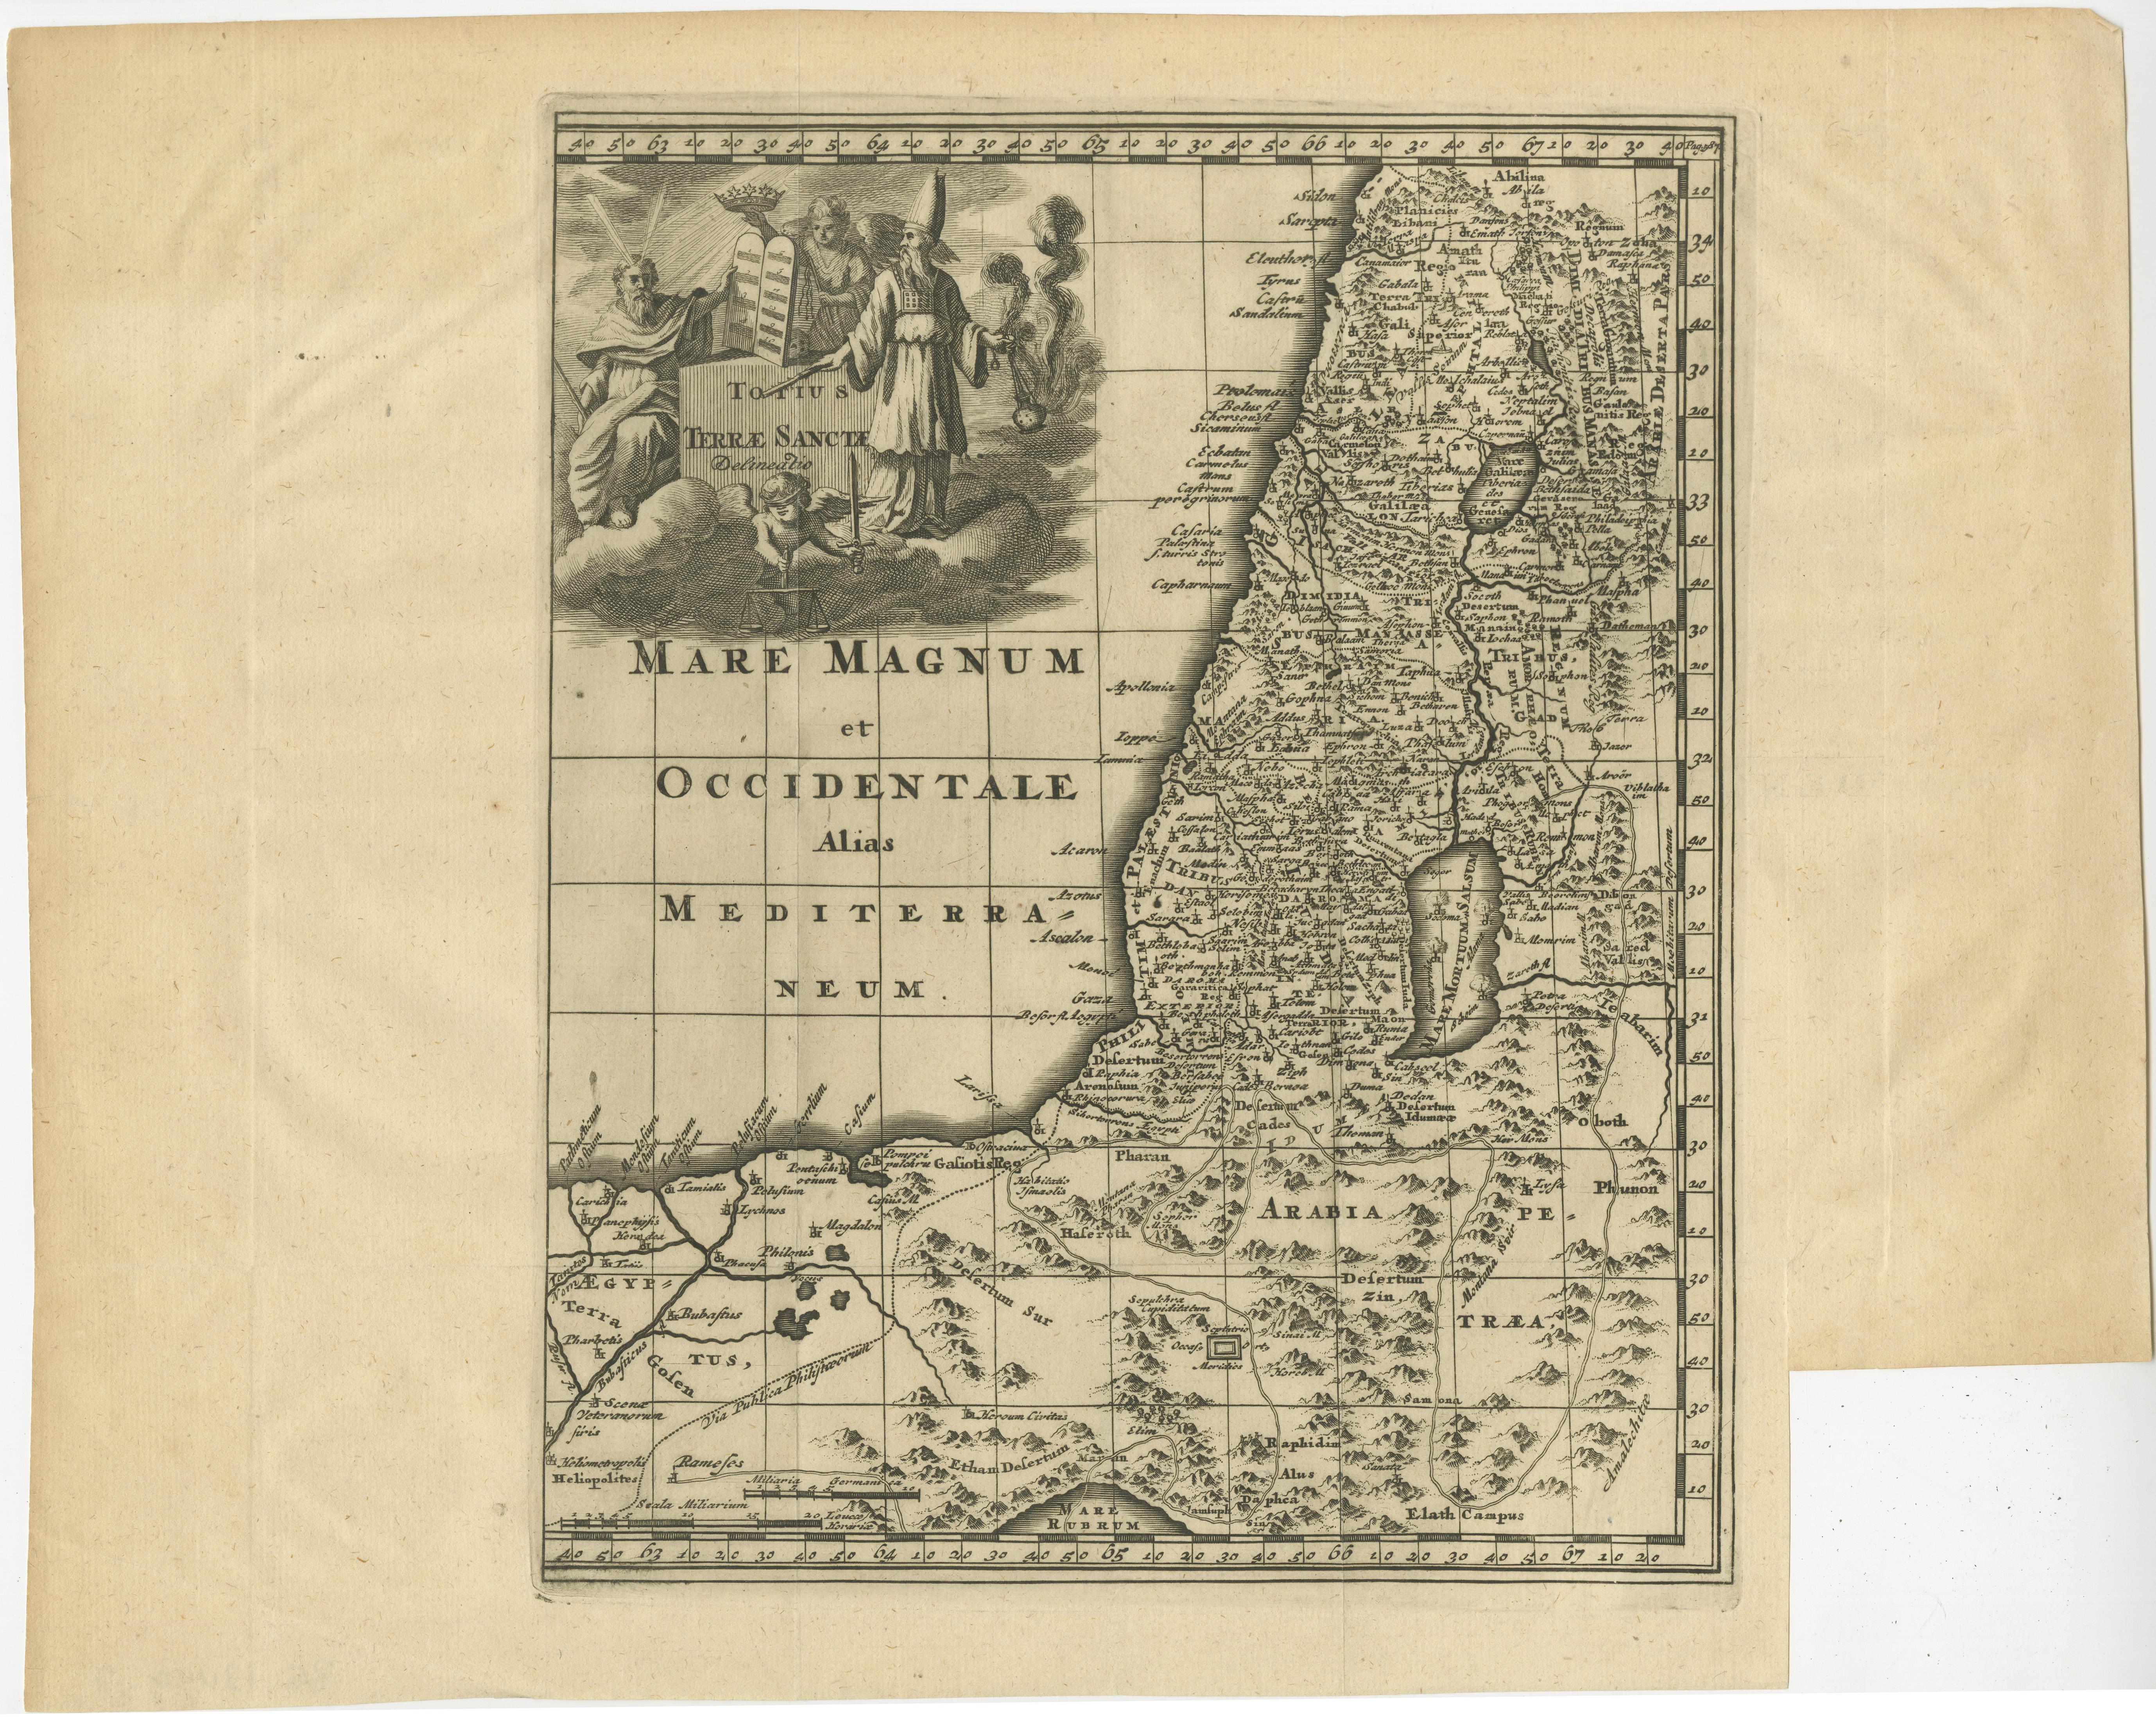 Antike Karte mit dem Titel 'Totius Terrae Sanctae'. Originale alte Karte des Heiligen Landes, mit einer großen dekorativen Kartusche. Der Begriff 